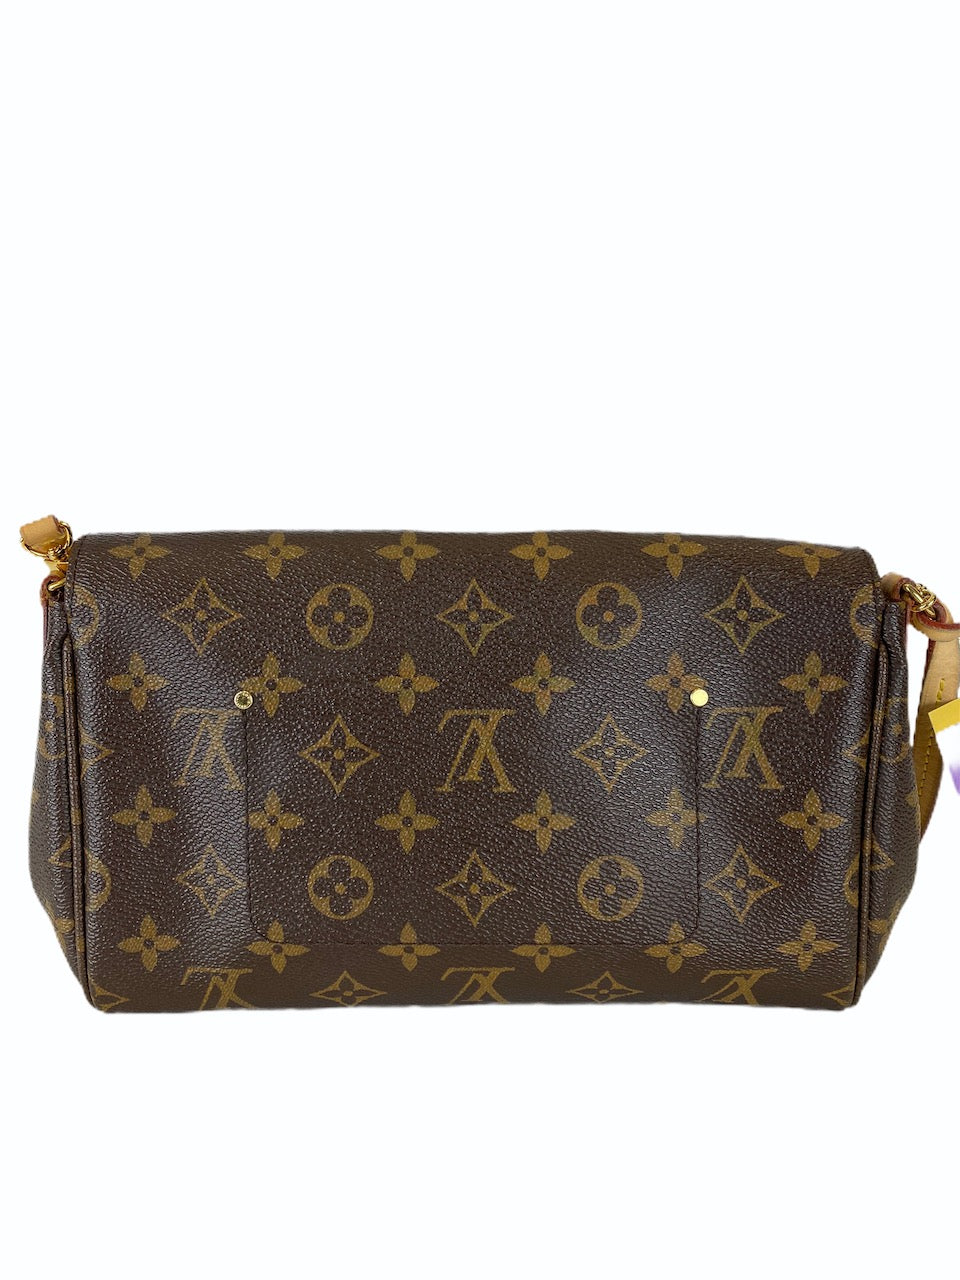 Louis Vuitton Monogram Canvas "Favorite" MM - As Seen on Instagram 2/9/20 - Siopaella Designer Exchange